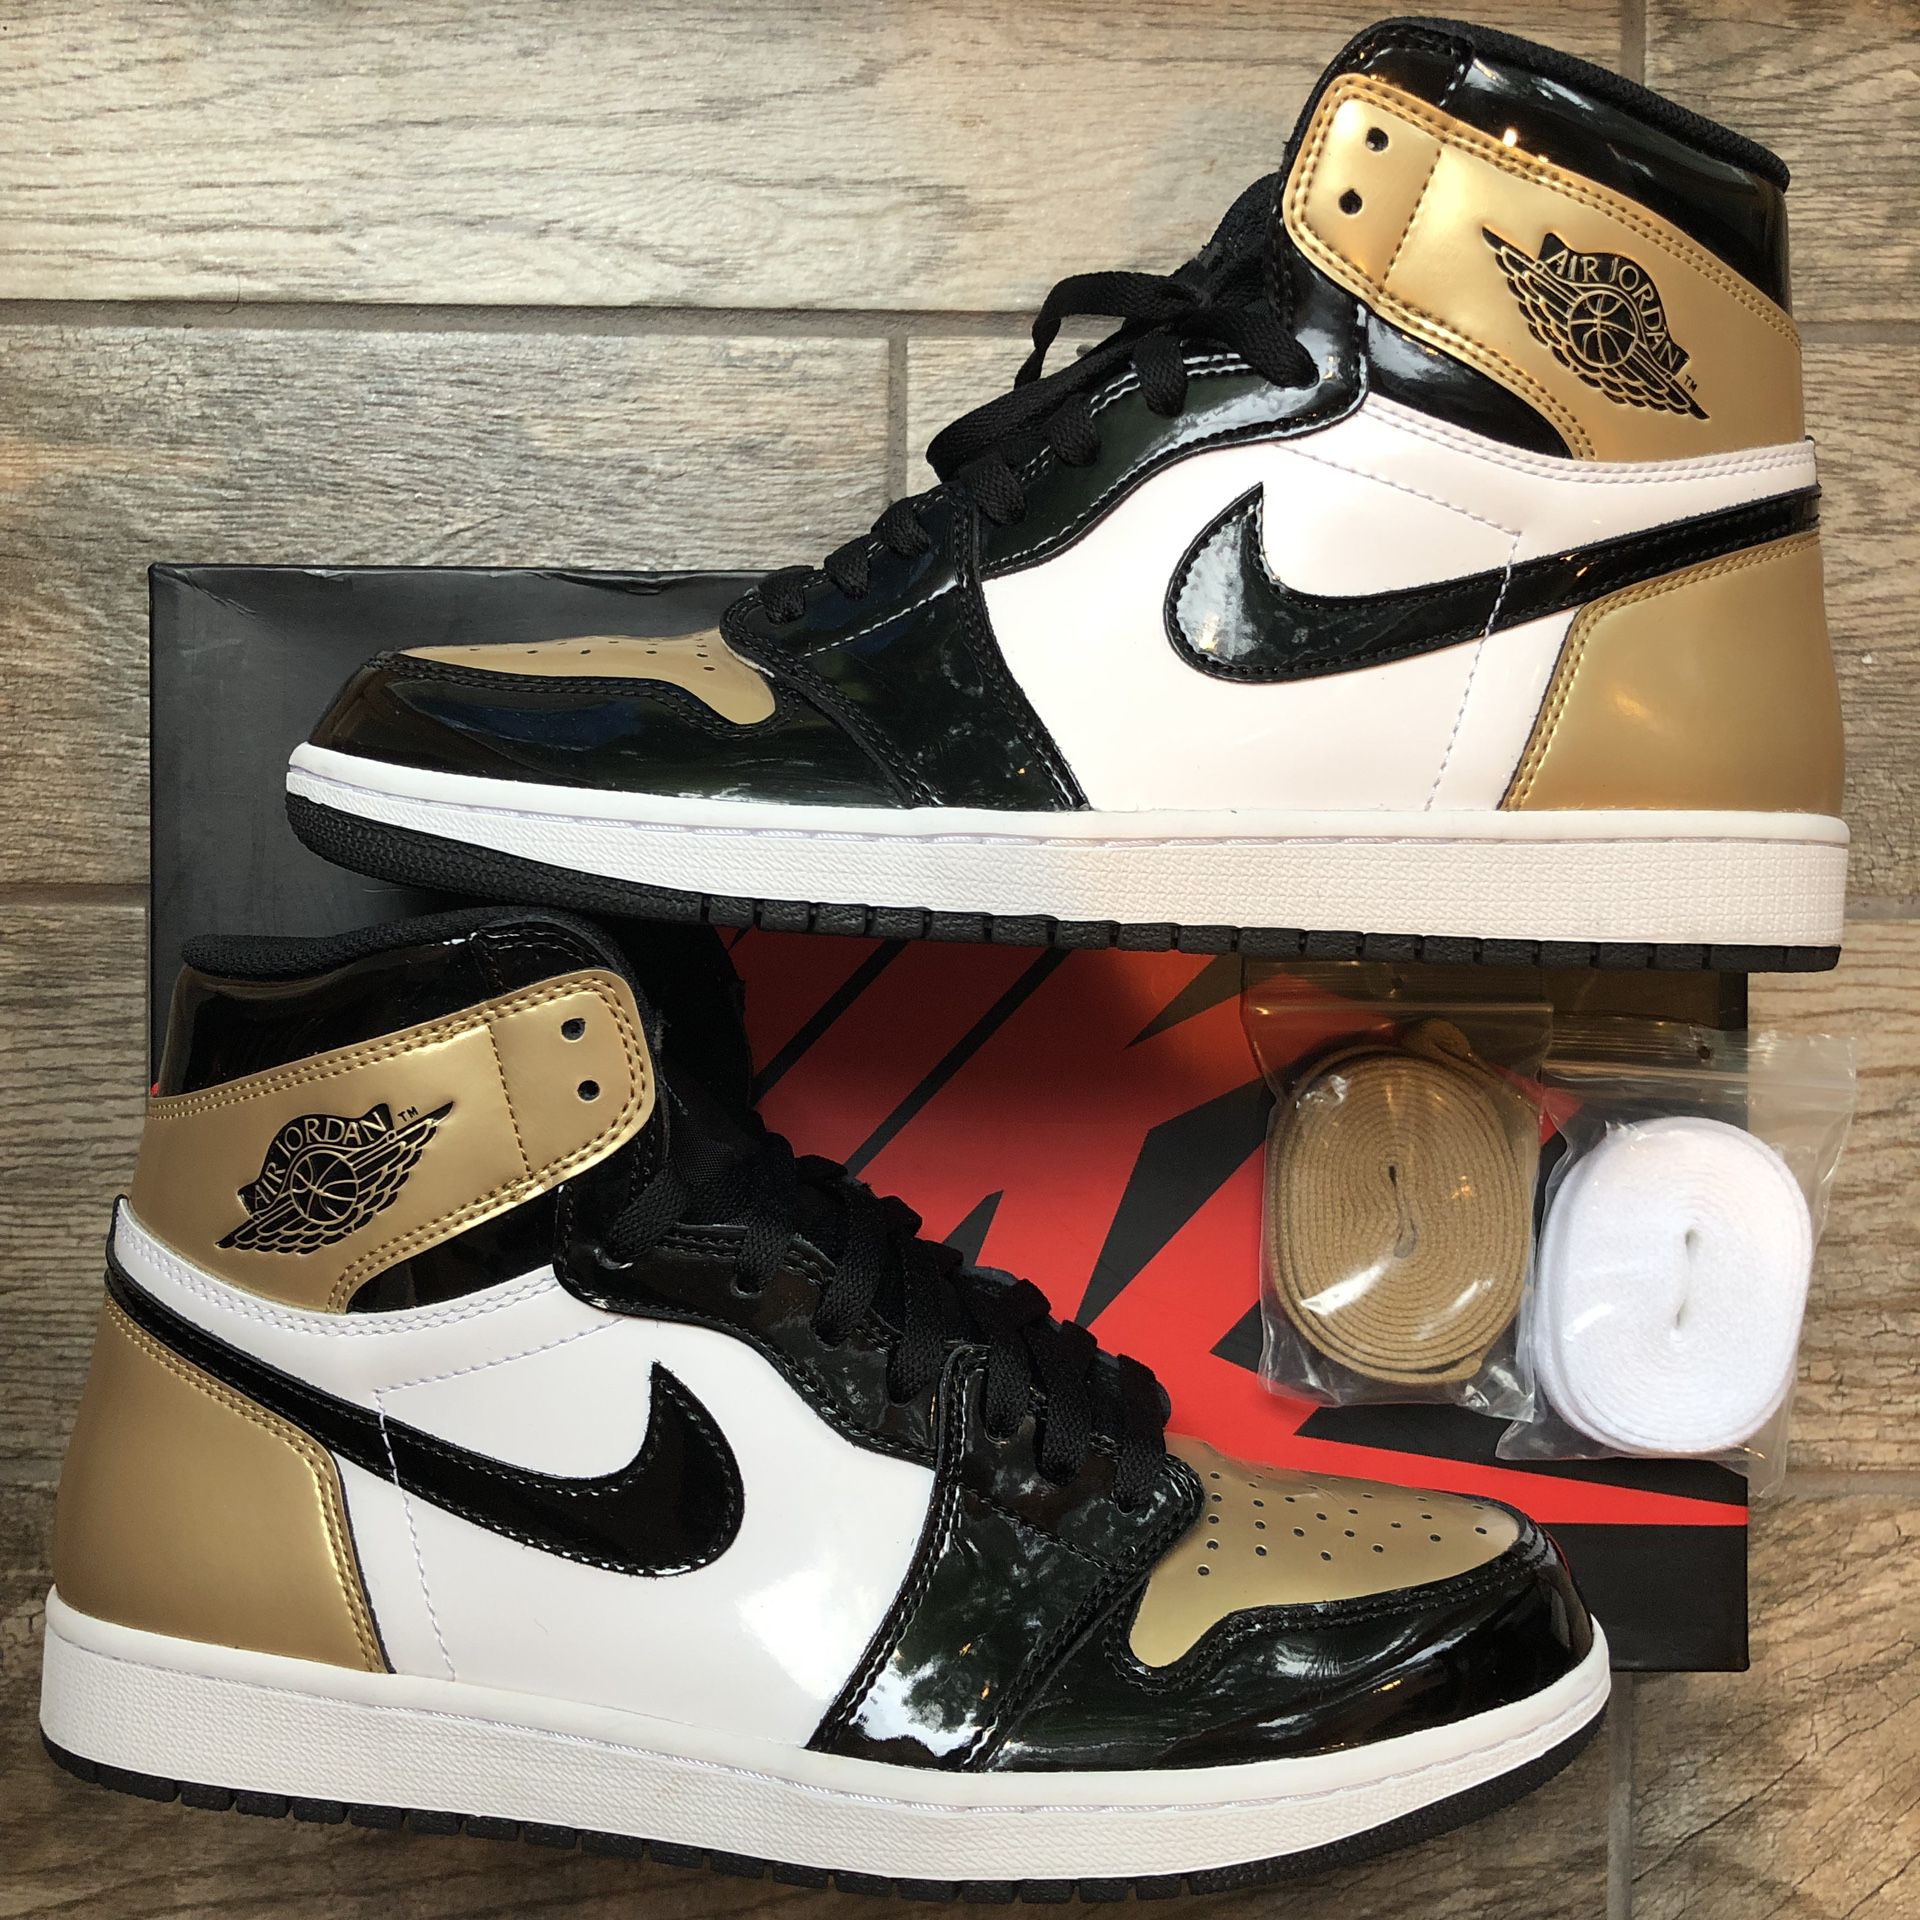 Jordan 1 ‘Gold Toe’ - Size 11